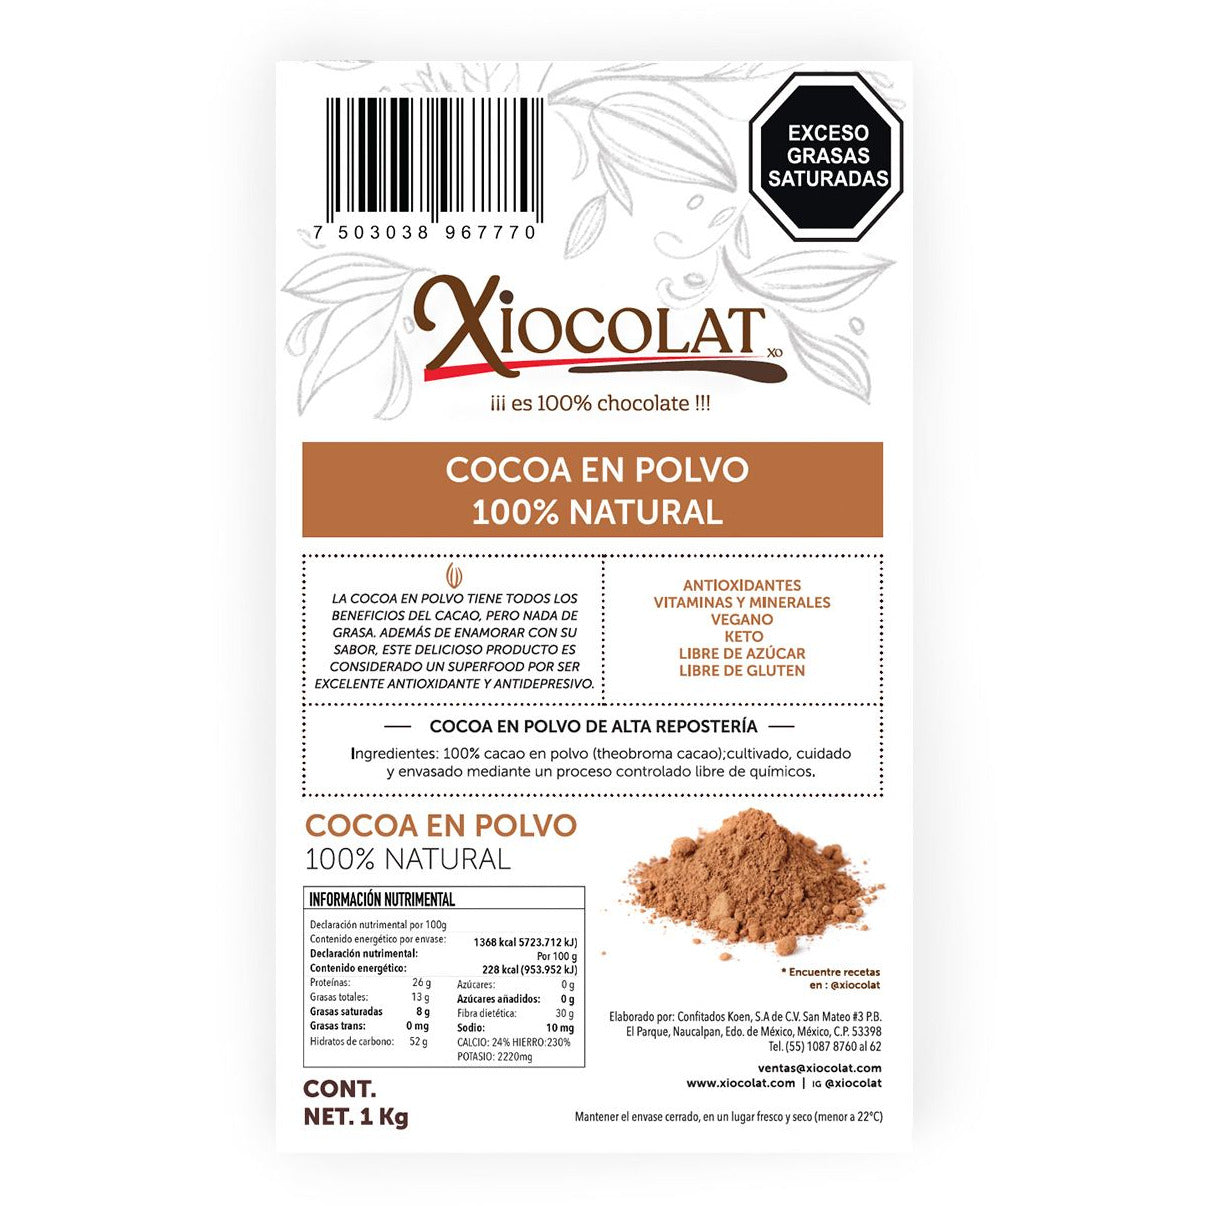 Cocoa en polvo 100% Natural